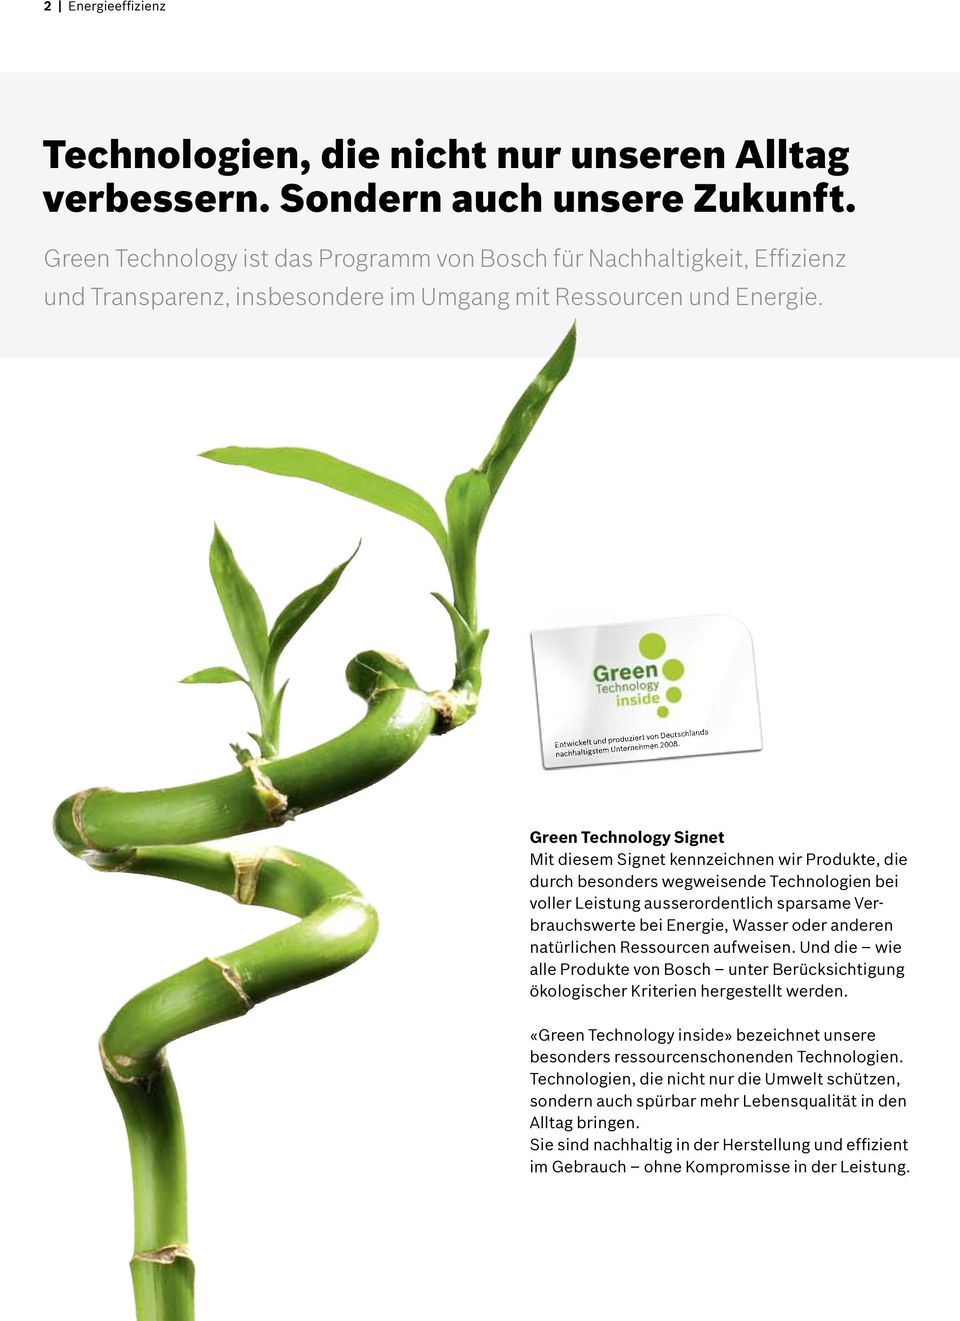 Entwickelt und produziert von Deutschlands nachhaltigstem Unternehmen 2008.